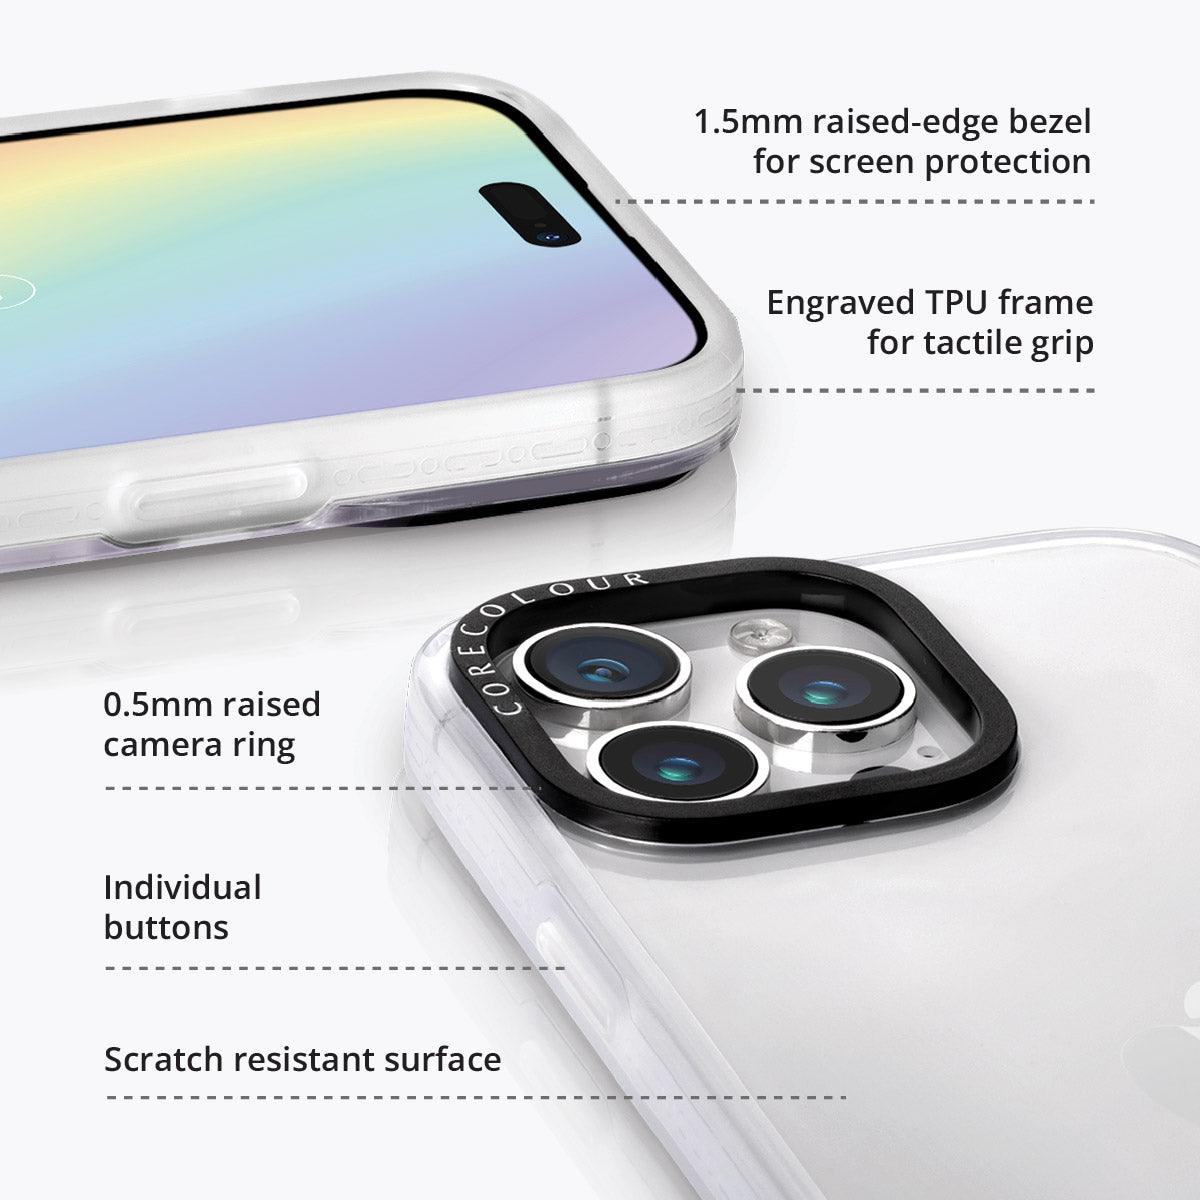 iPhone 12 Pro Max Banksia Phone Case - CORECOLOUR